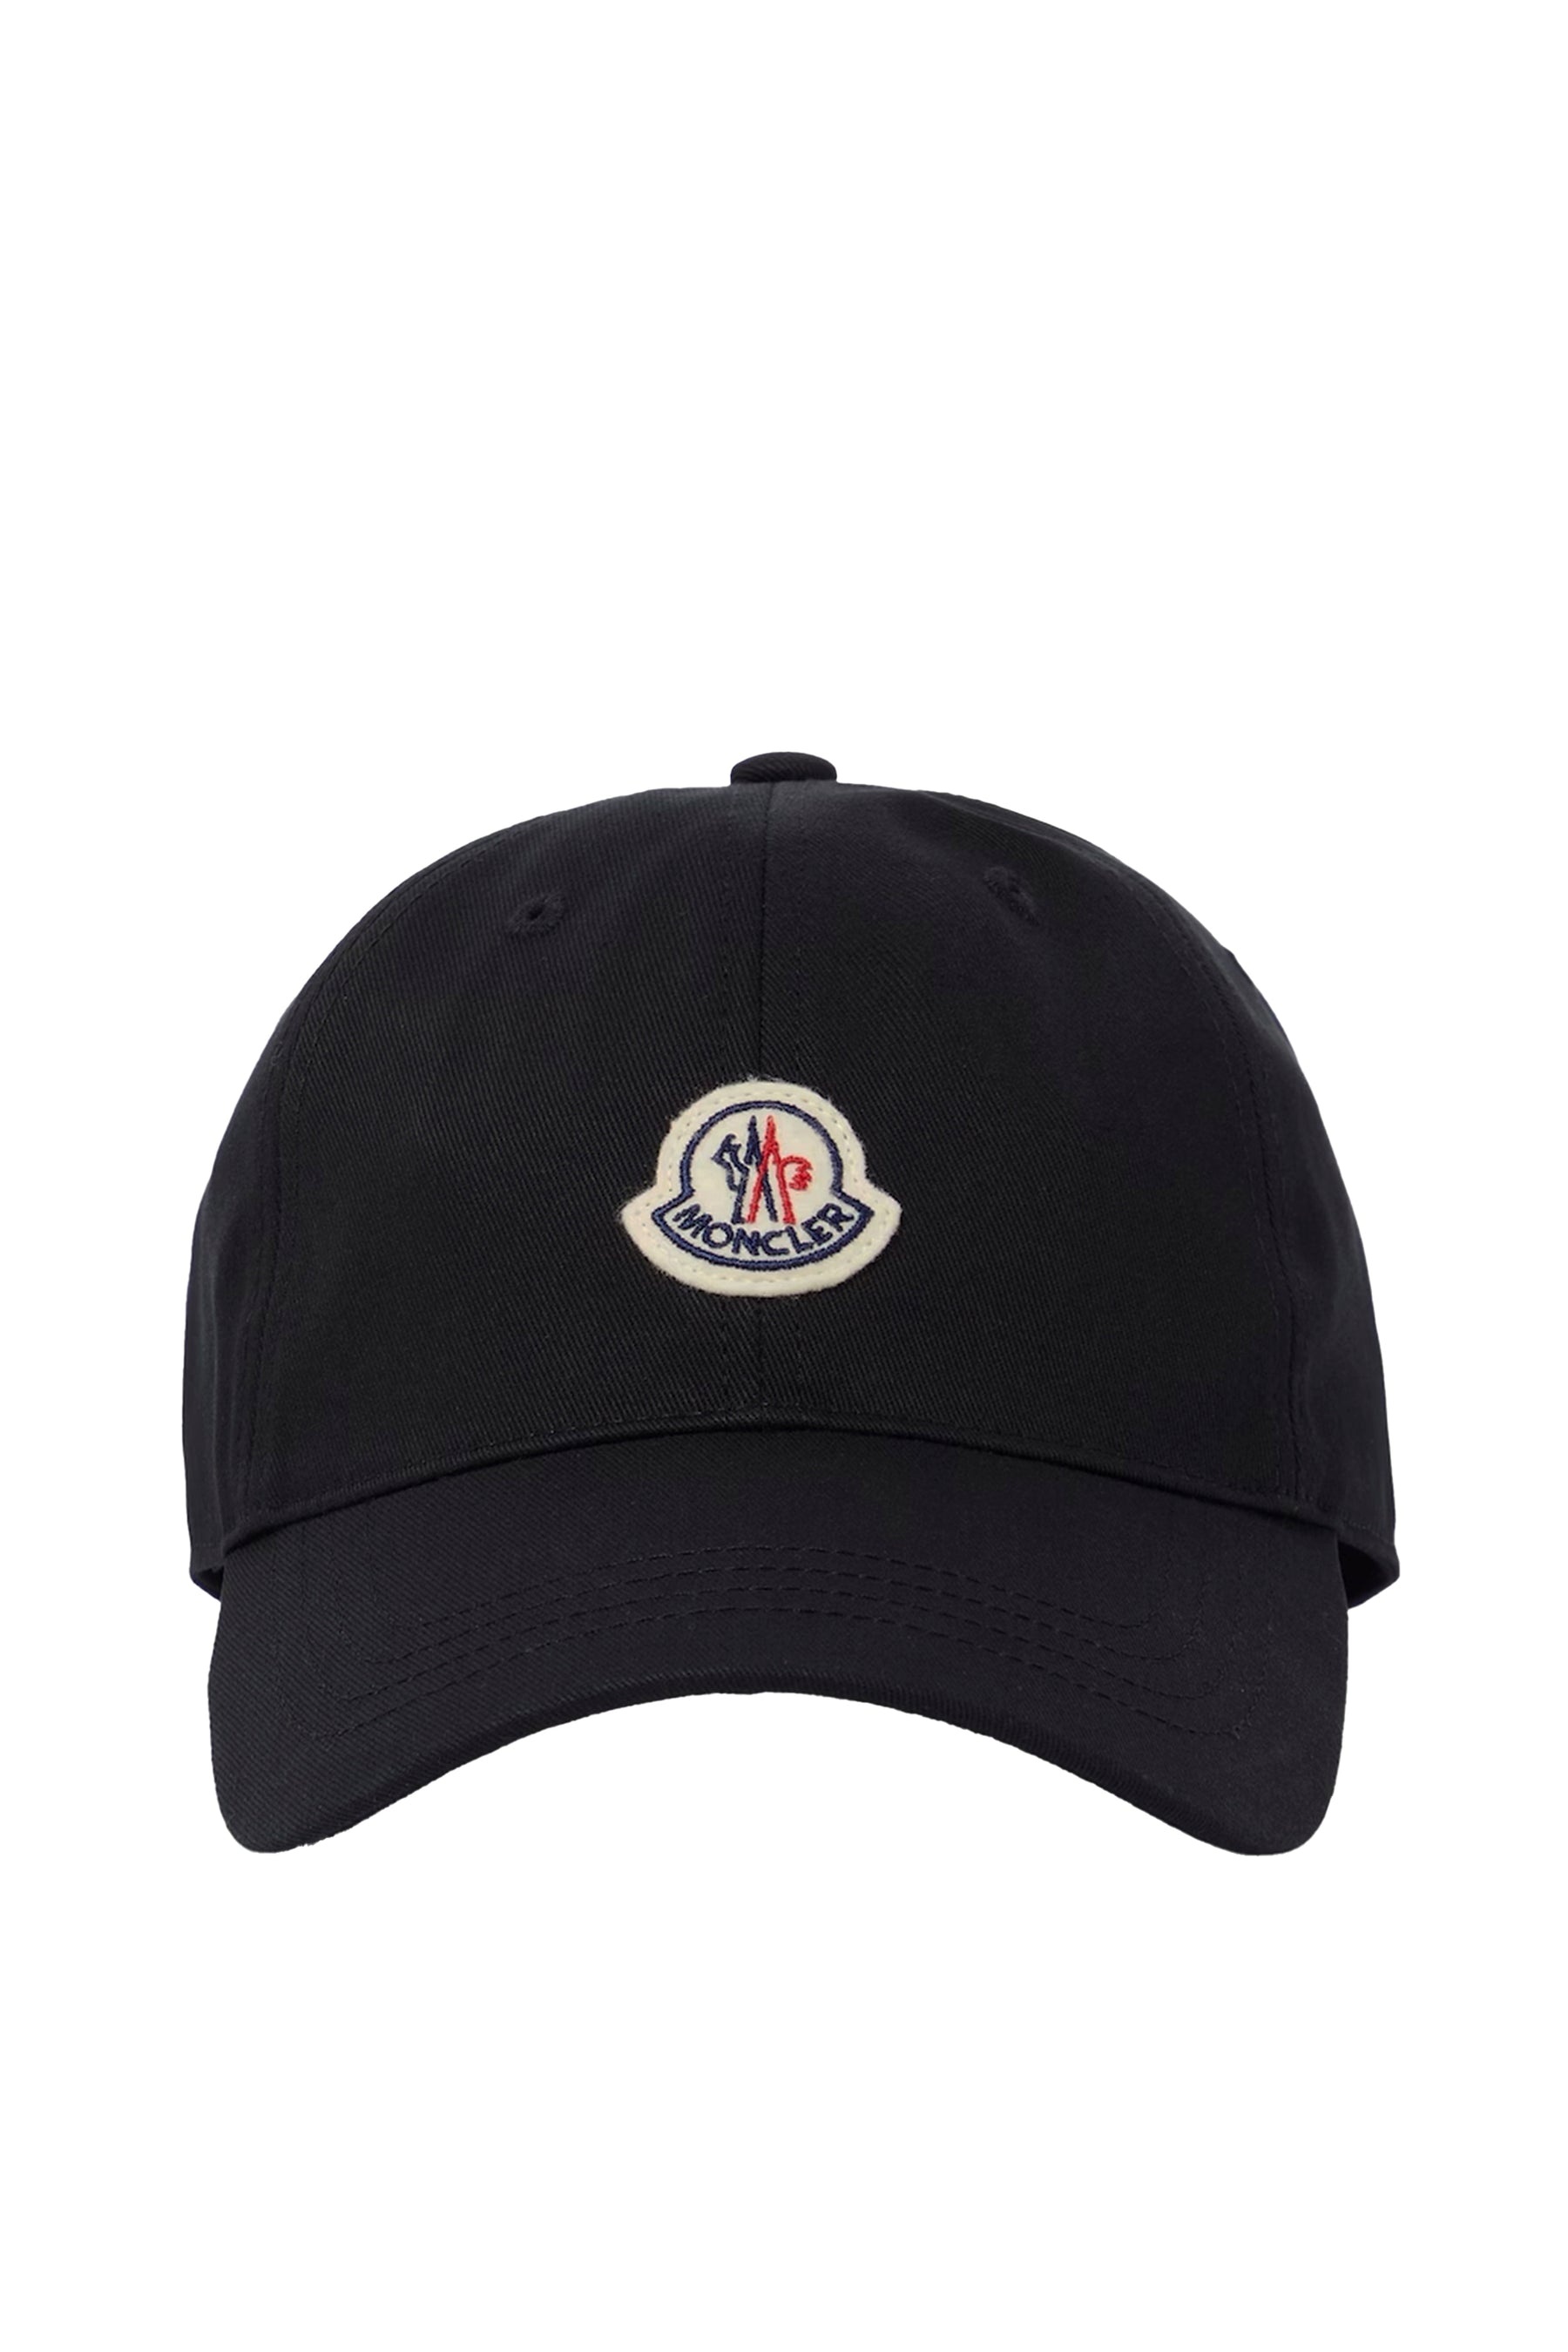 BASEBALL CAP / BLK (999) - 1